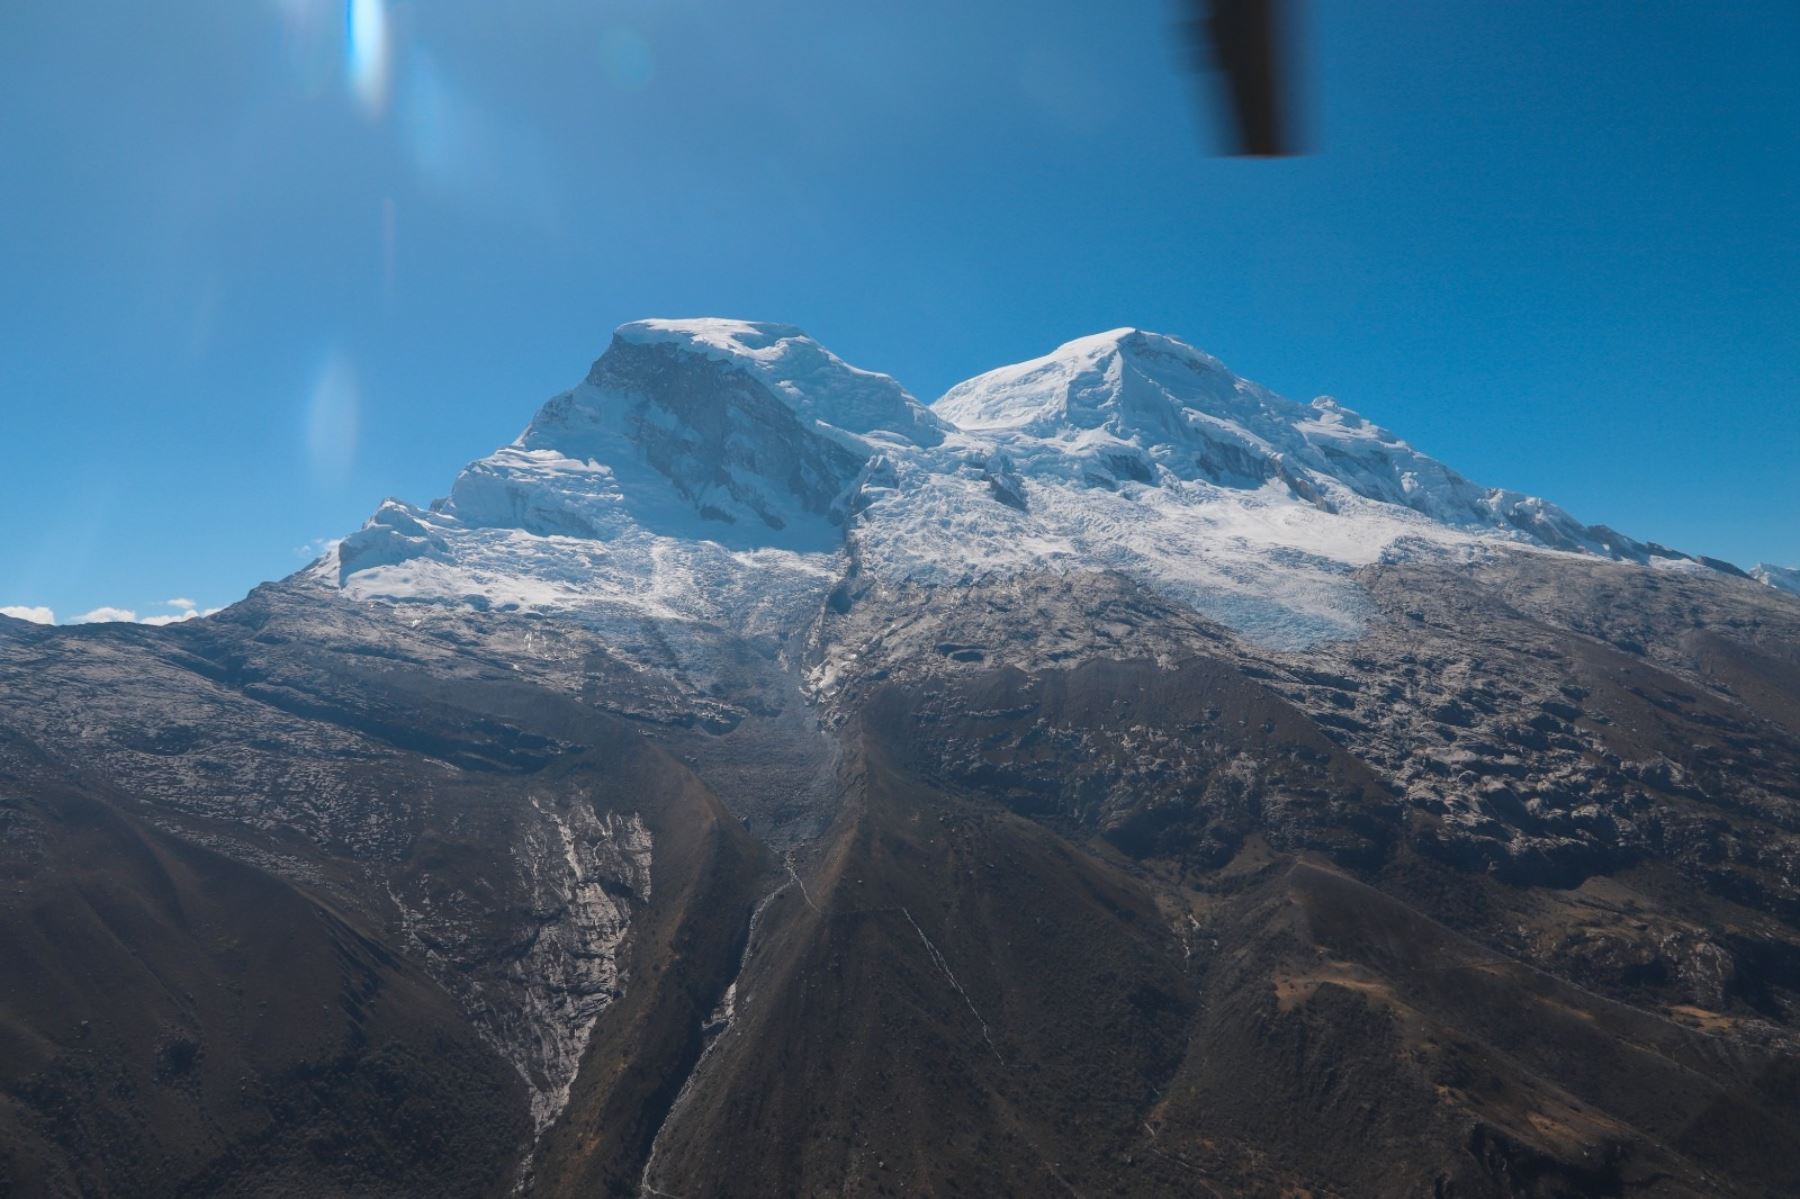 El 20 de junio se registró una avalancha de hielo en el pico norte del nevado Huascarán, ubicado en Yungay, región Áncash. Foto: ANDINA/Difusión